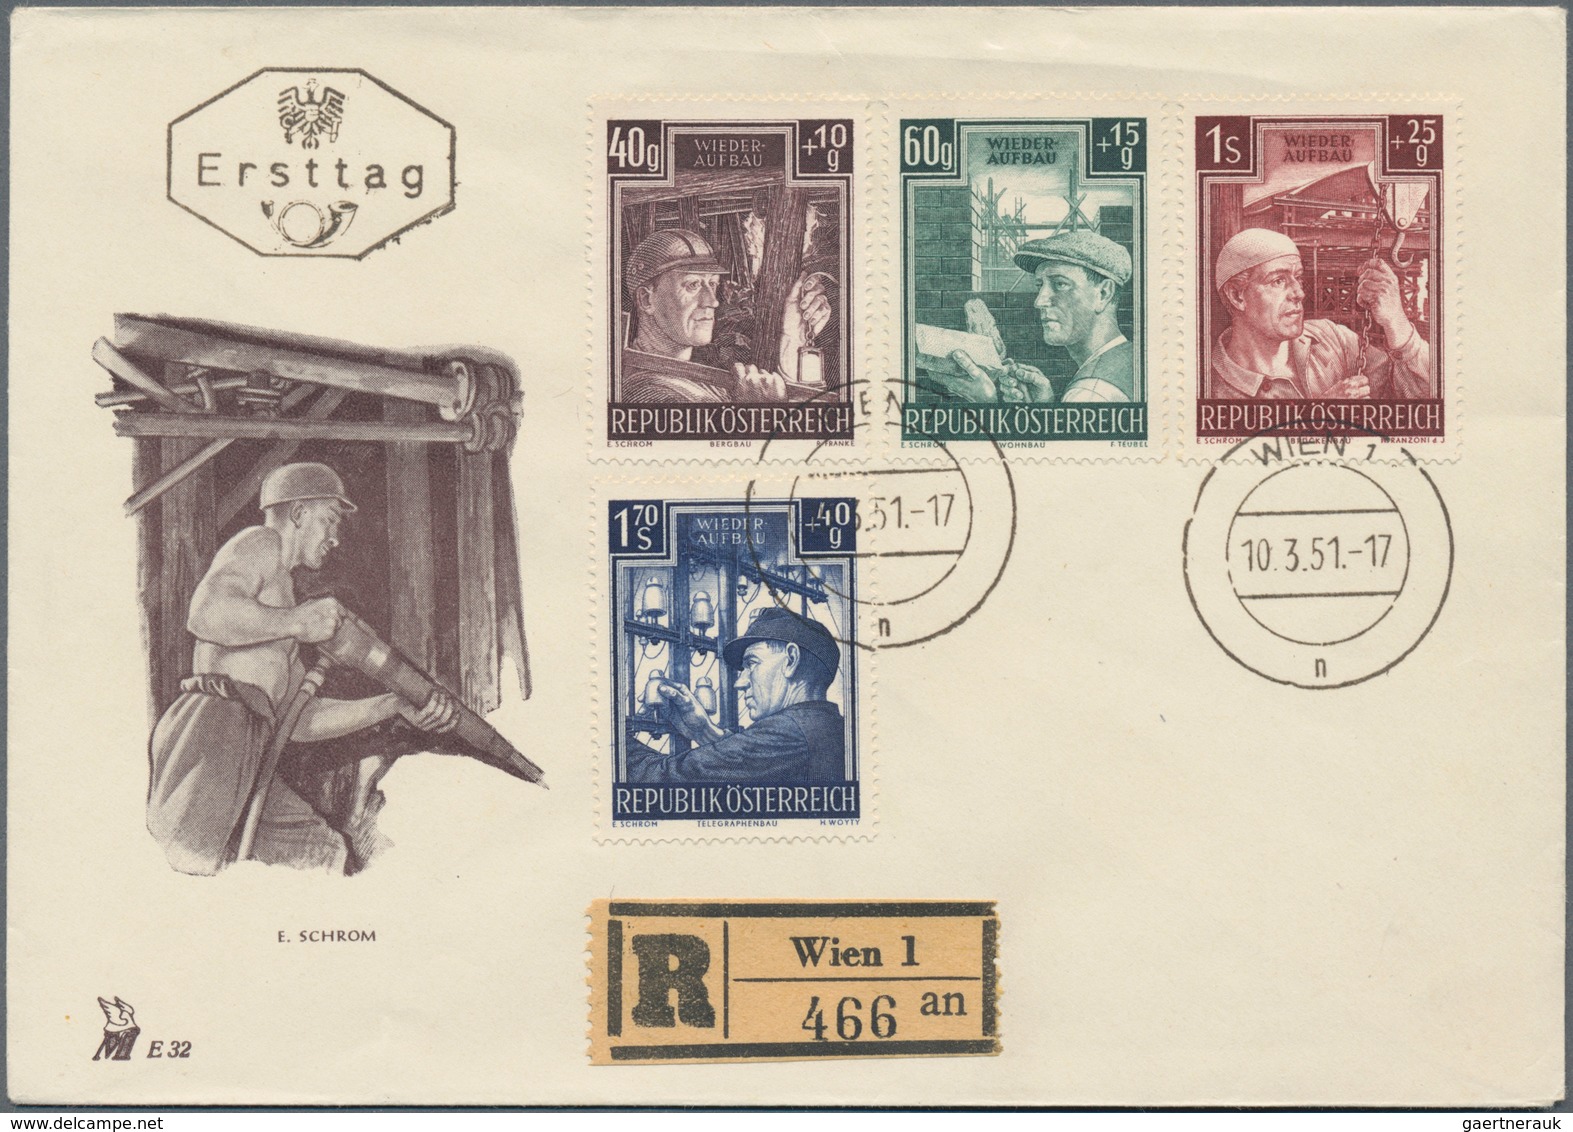 Österreich: 1890/1958 (ca.), Bestand mit 40 Belegen meist Briefe und ein paar Ganzsachen dabei etlic